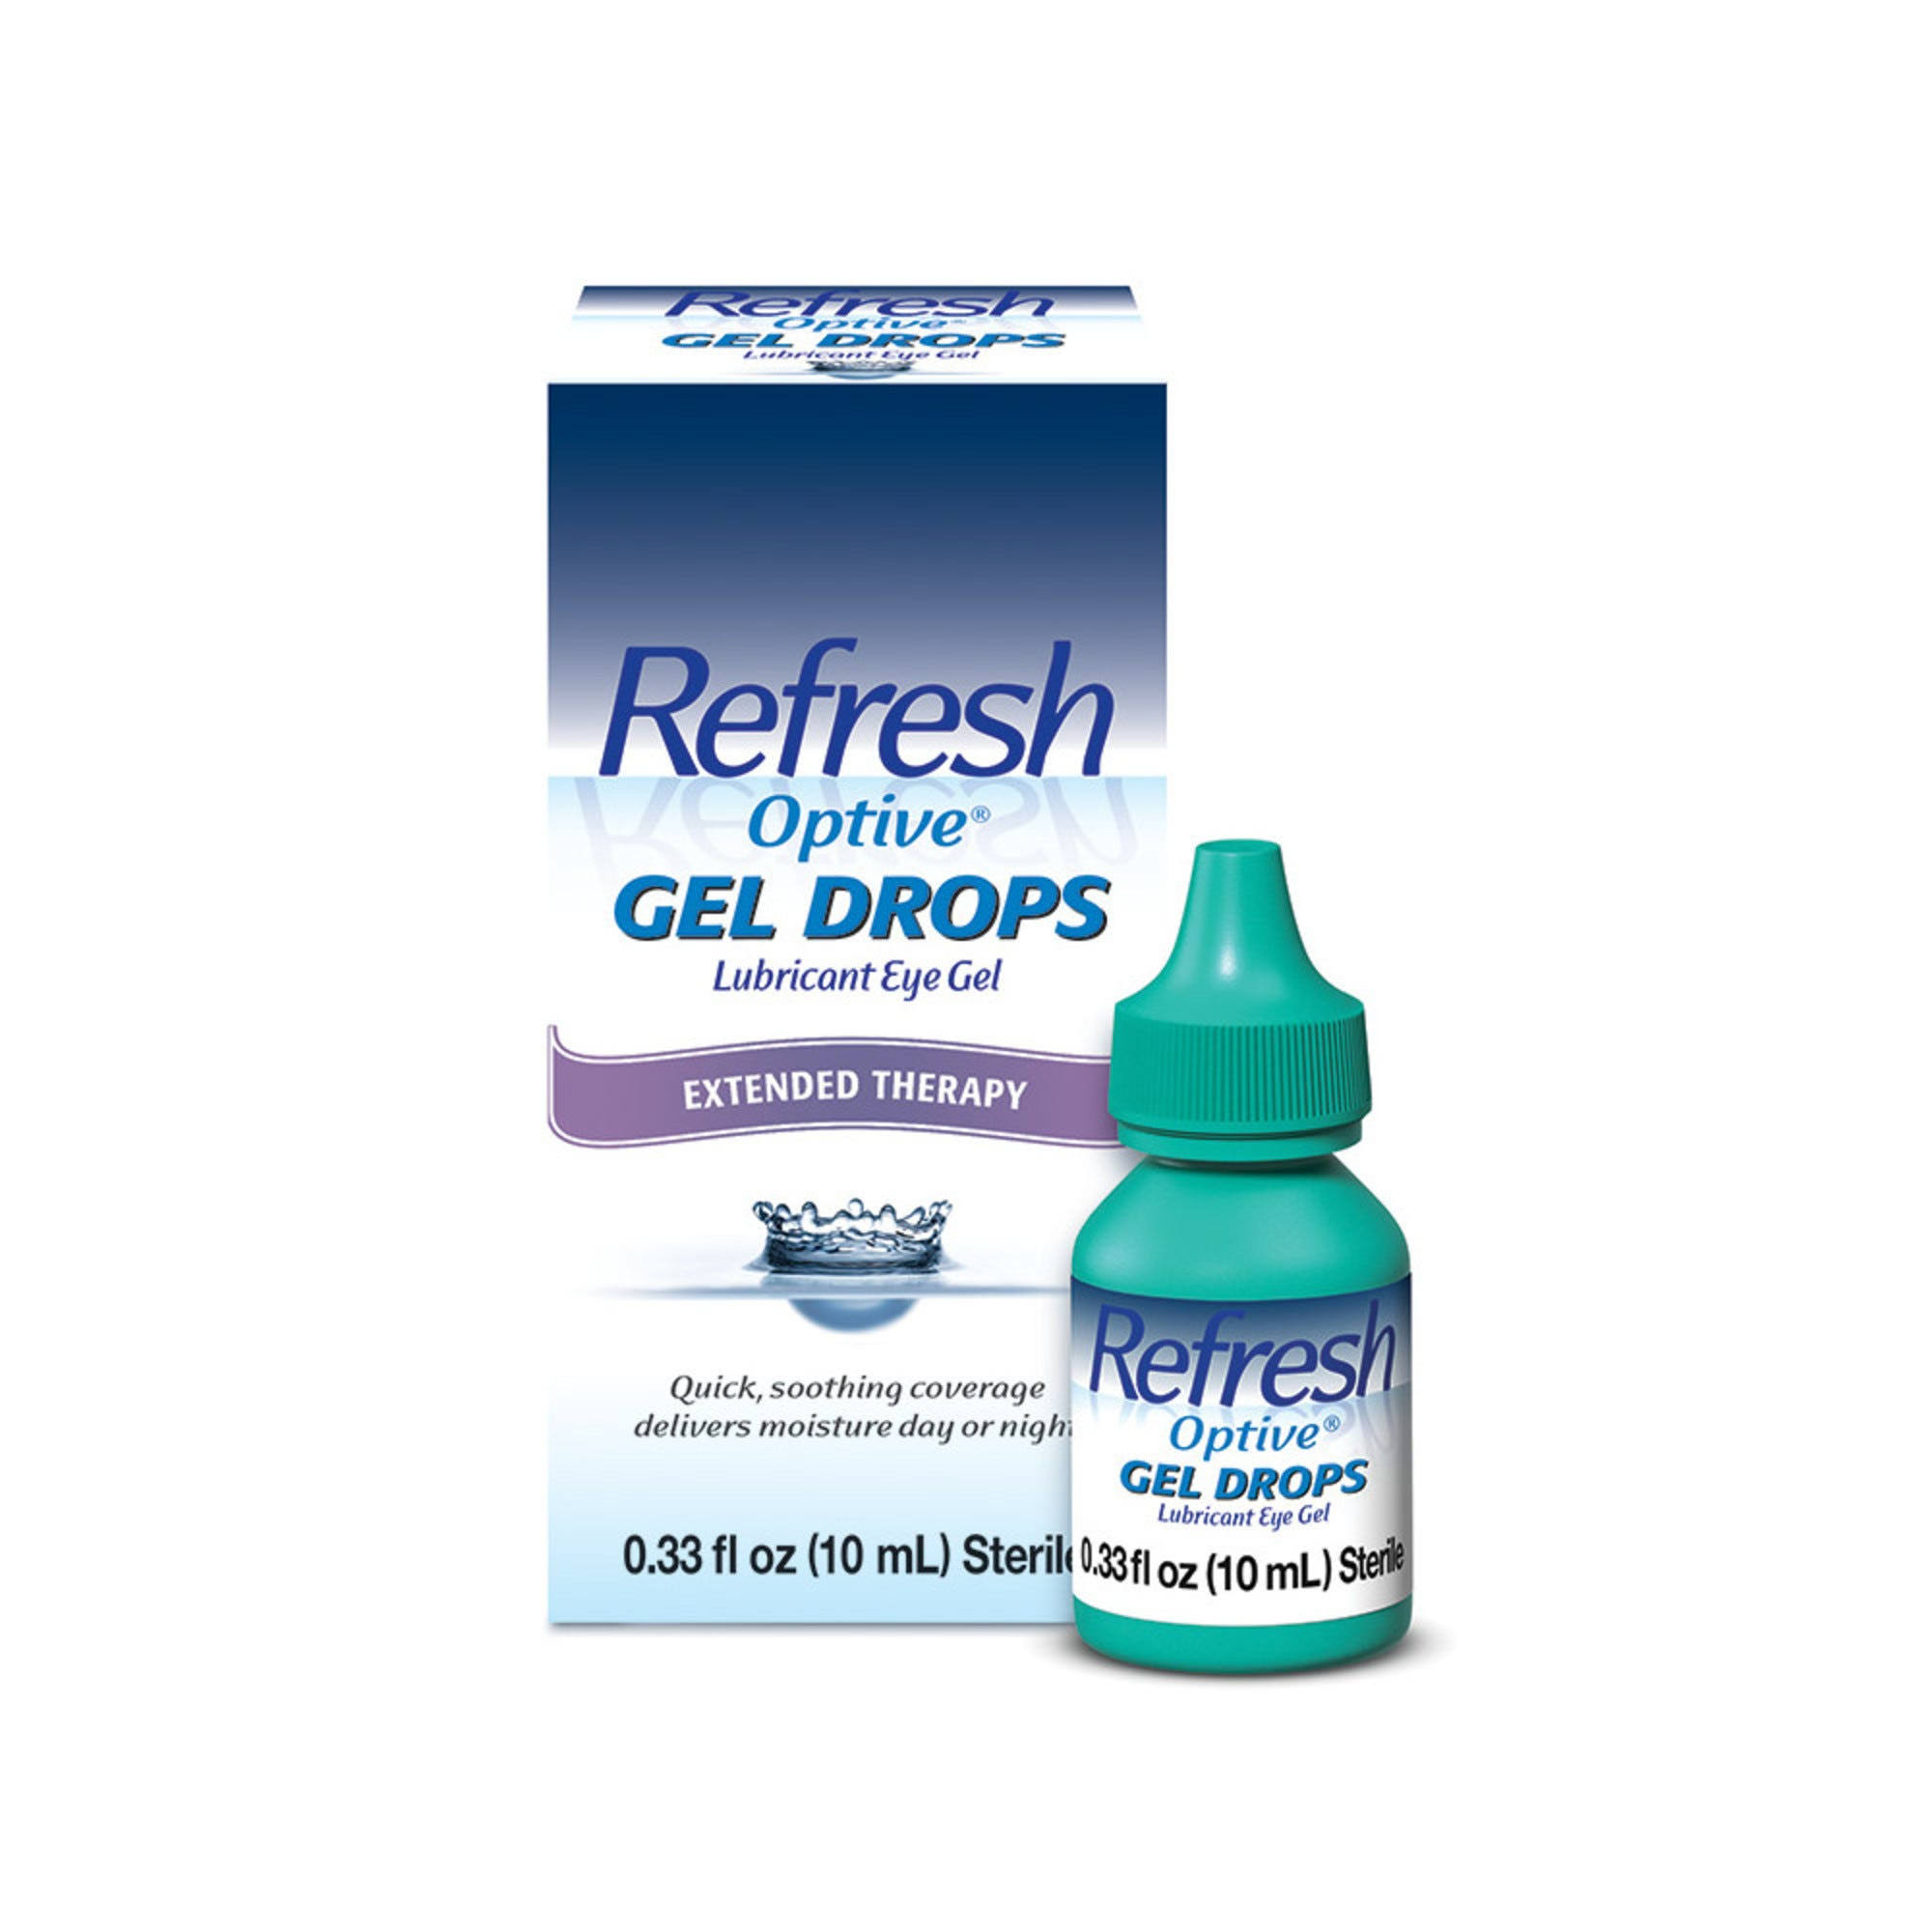 Refresh Optive Gel Drops Lubricant Eye Gel - 0.33oz